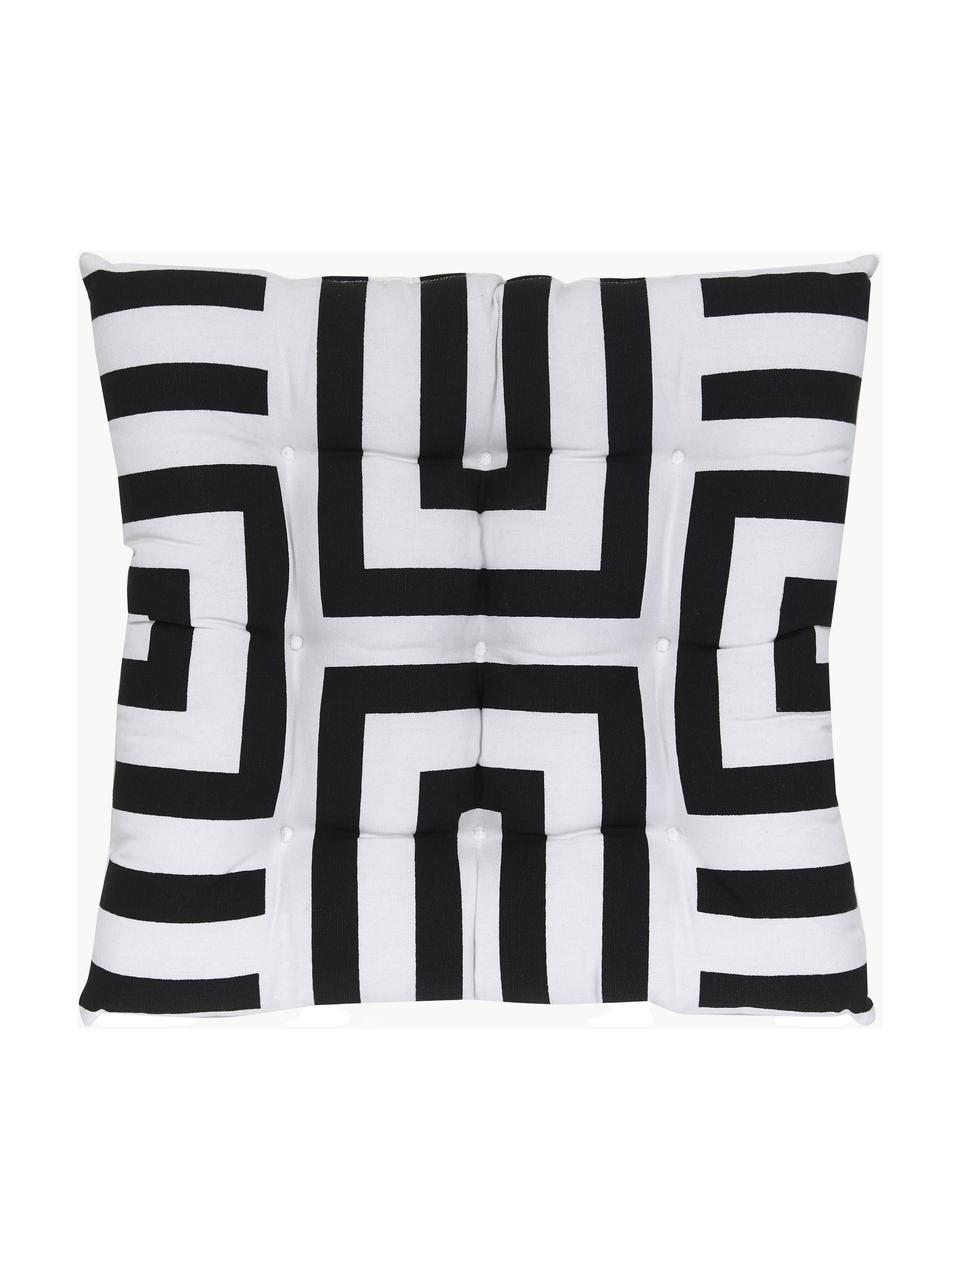 Baumwoll-Sitzkissen Bram mit grafischem Muster, Bezug: 100% Baumwolle, Schwarz, Weiss, B 40 x L 40 cm